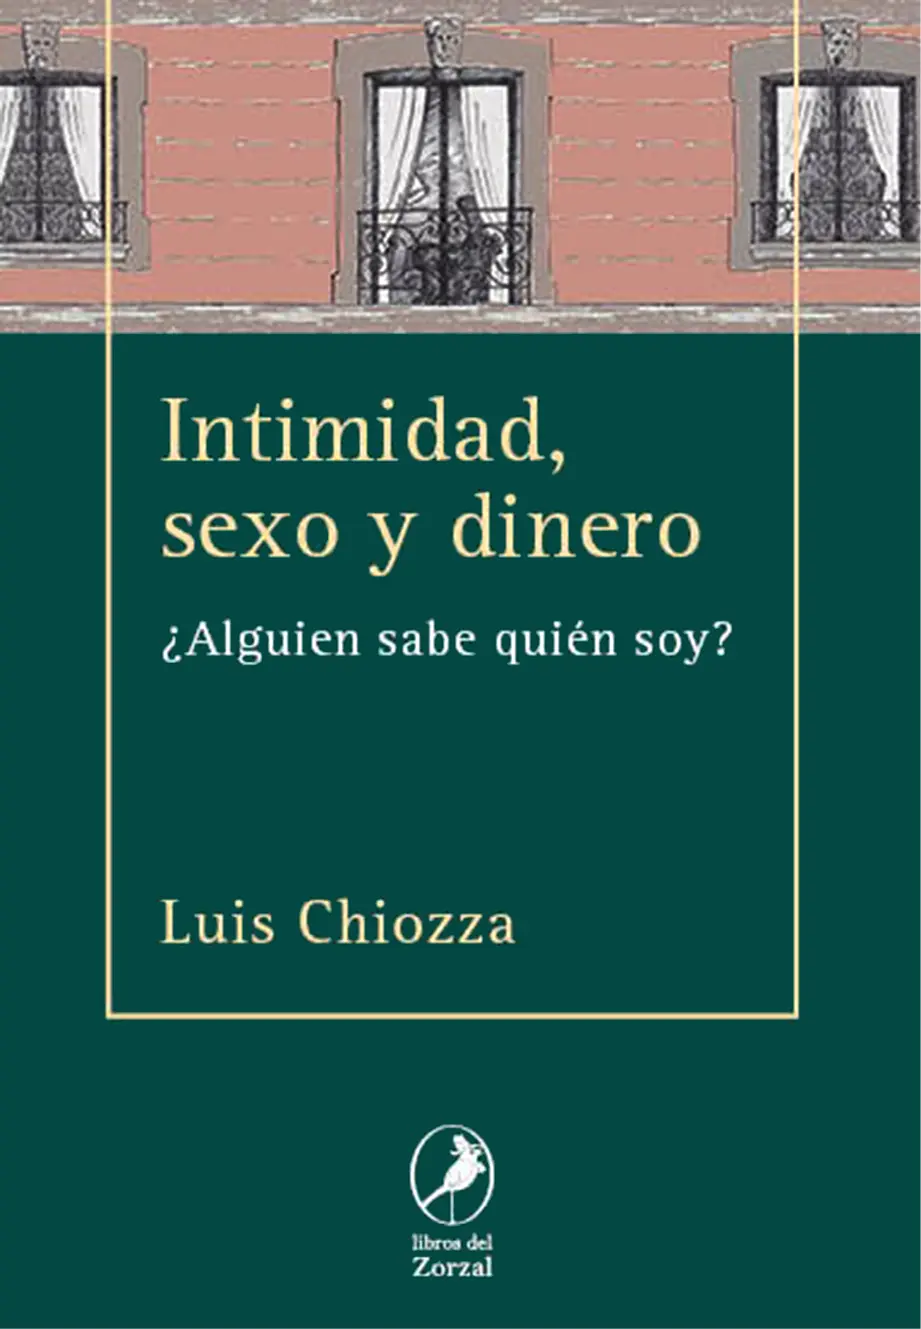 Luis Chiozza Intimidad sexo y dinero Alguien sabe quién soy Chiozza - фото 1